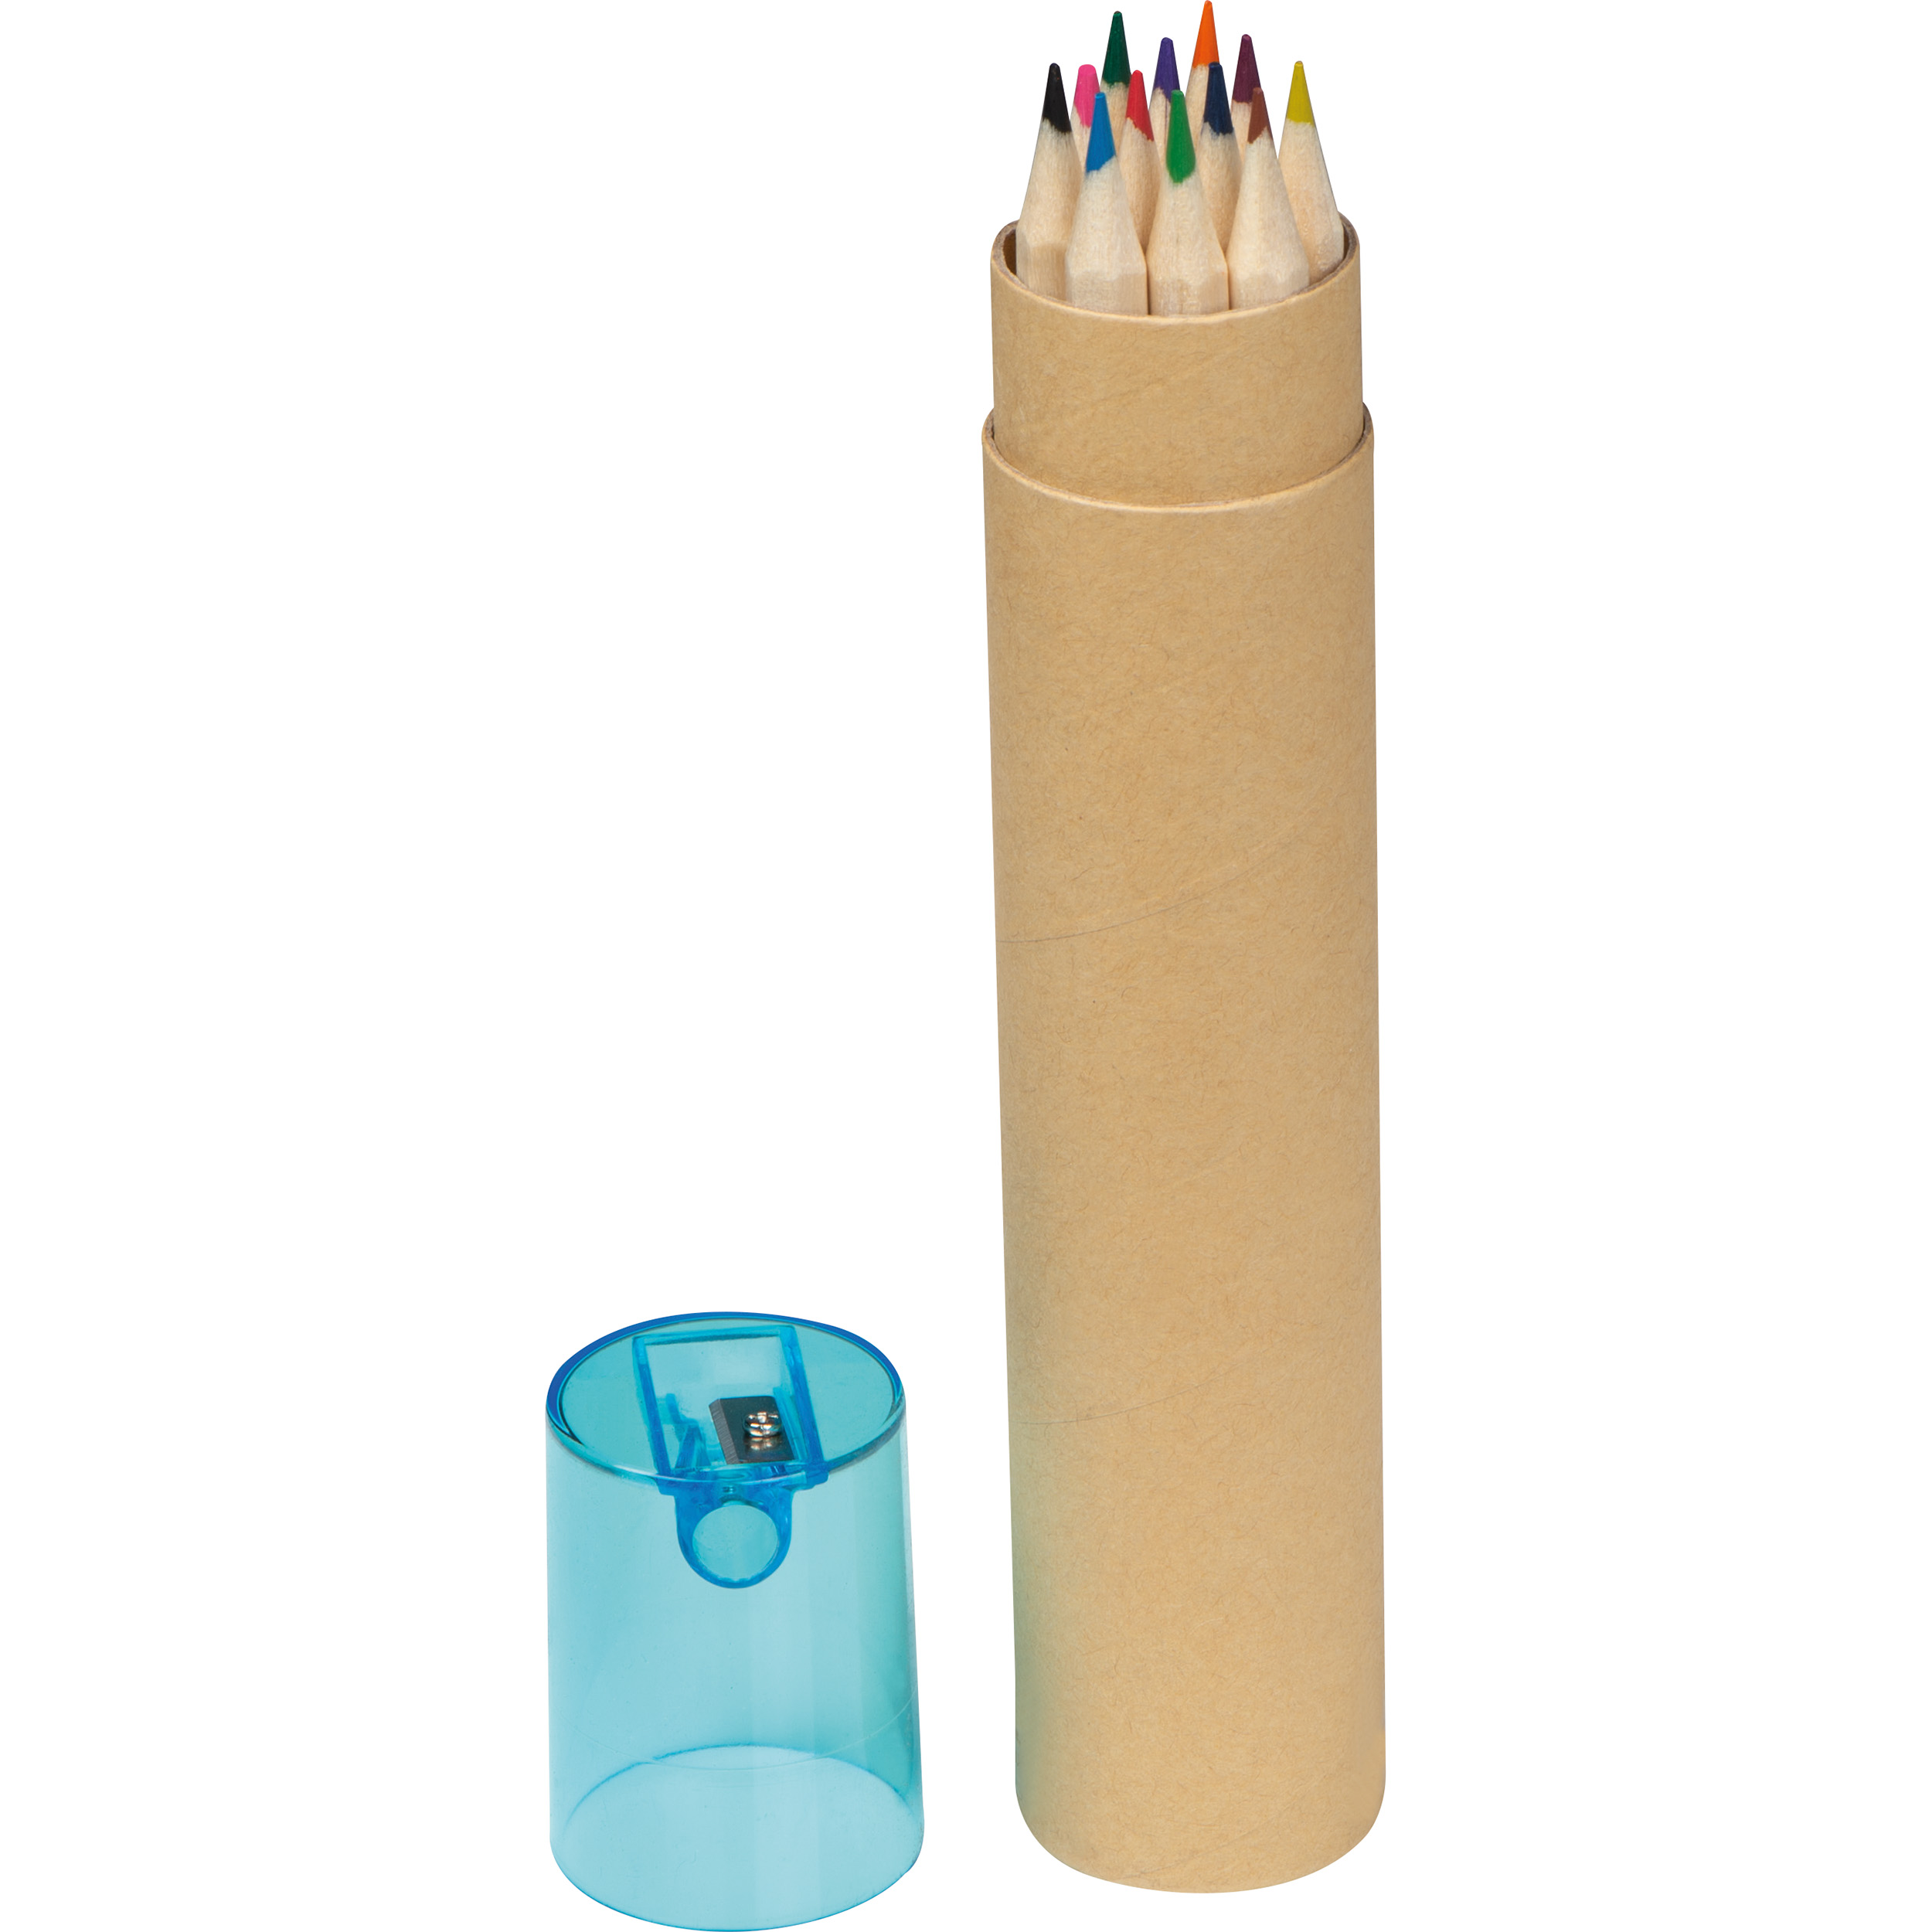 12 lápices de colores en tubo de cartón.